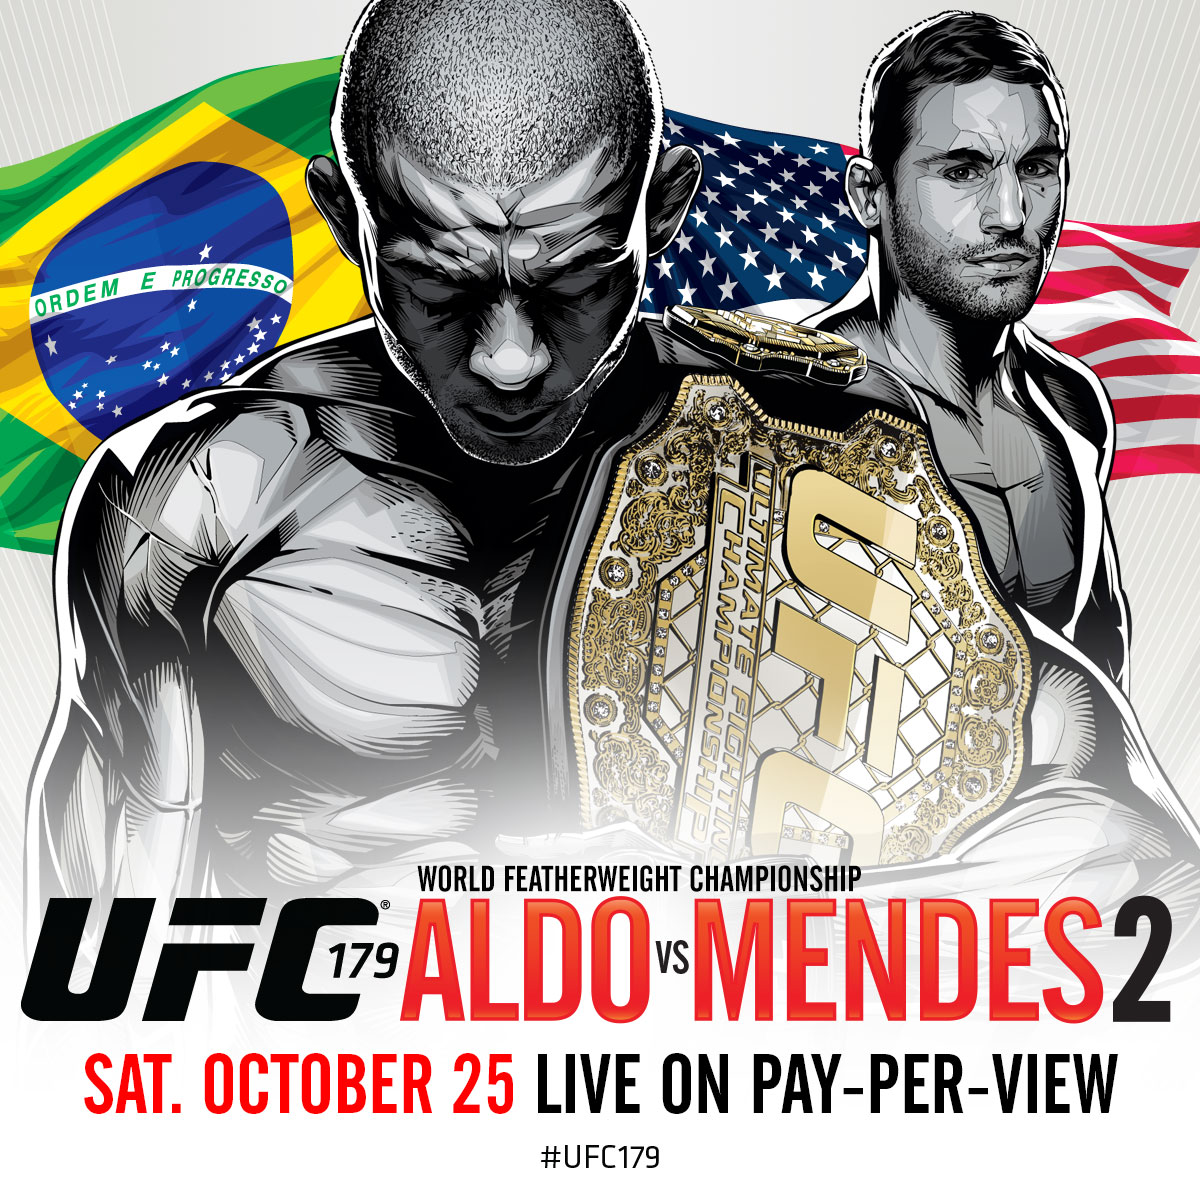 Carte pour le UFC 179 du 25 octobre prochain